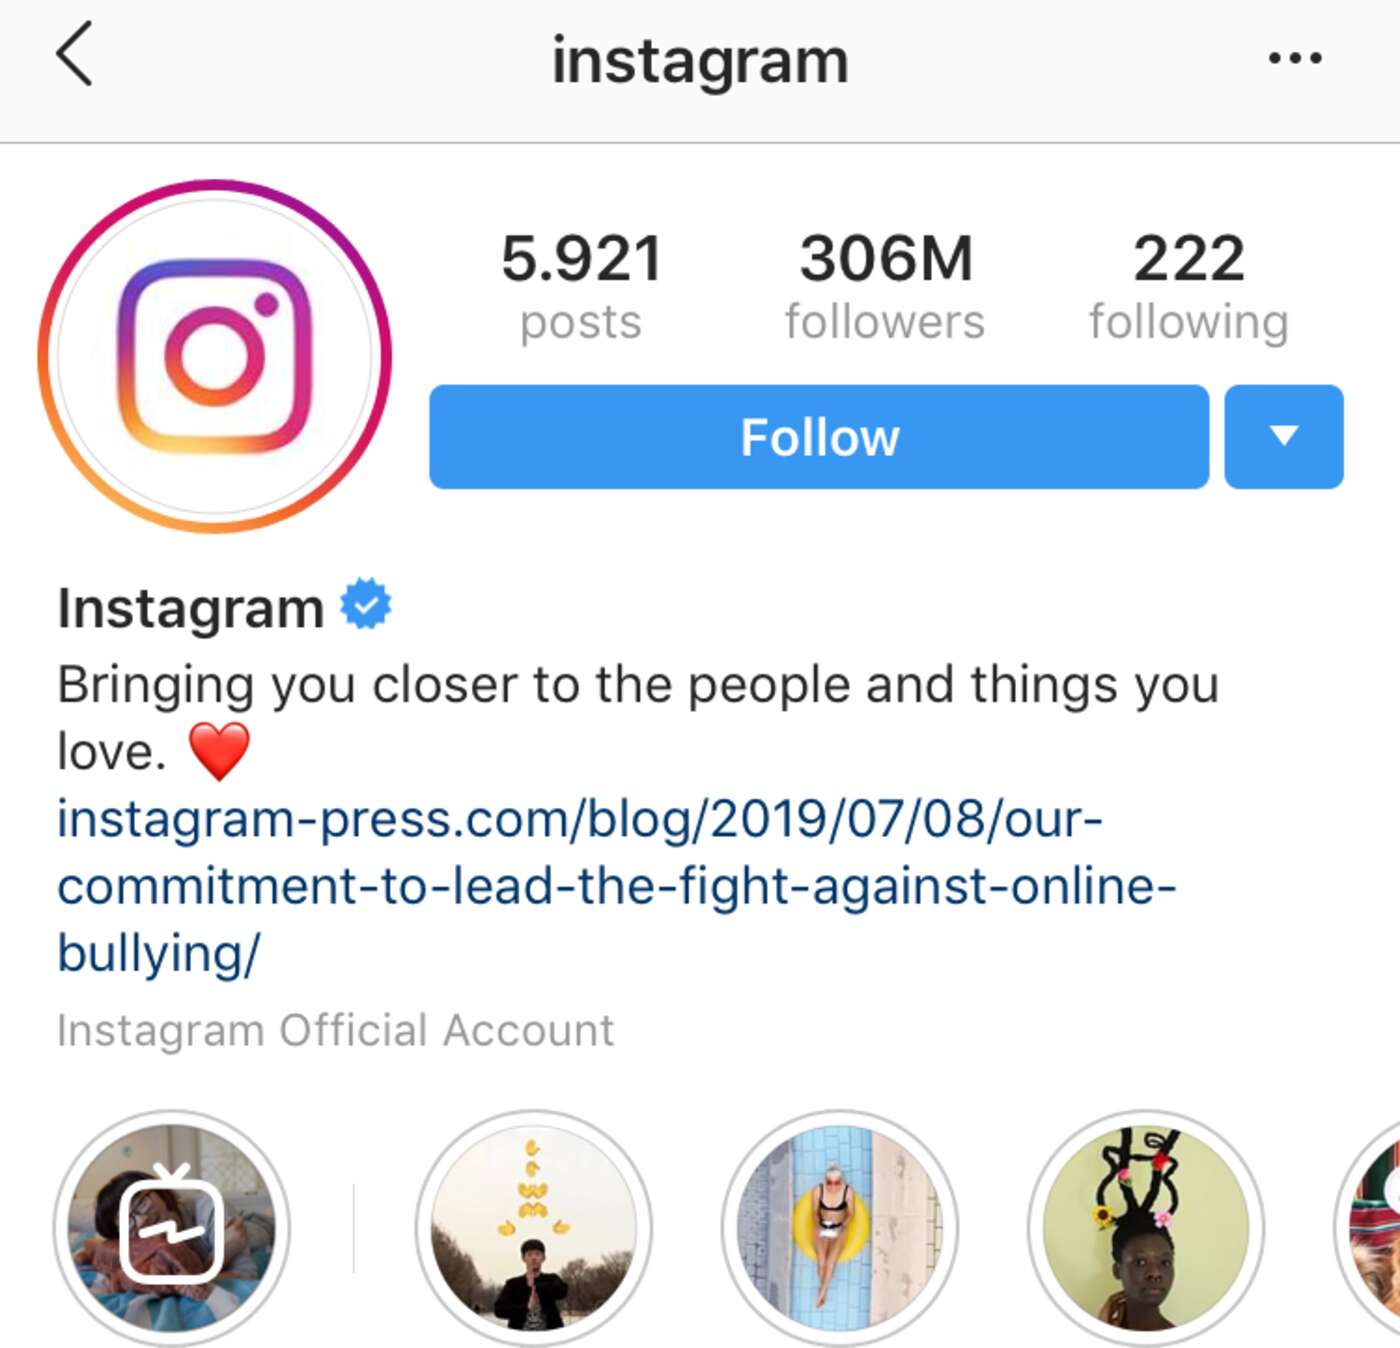 Instagram auf Instagram - Ein bisschen paradox...